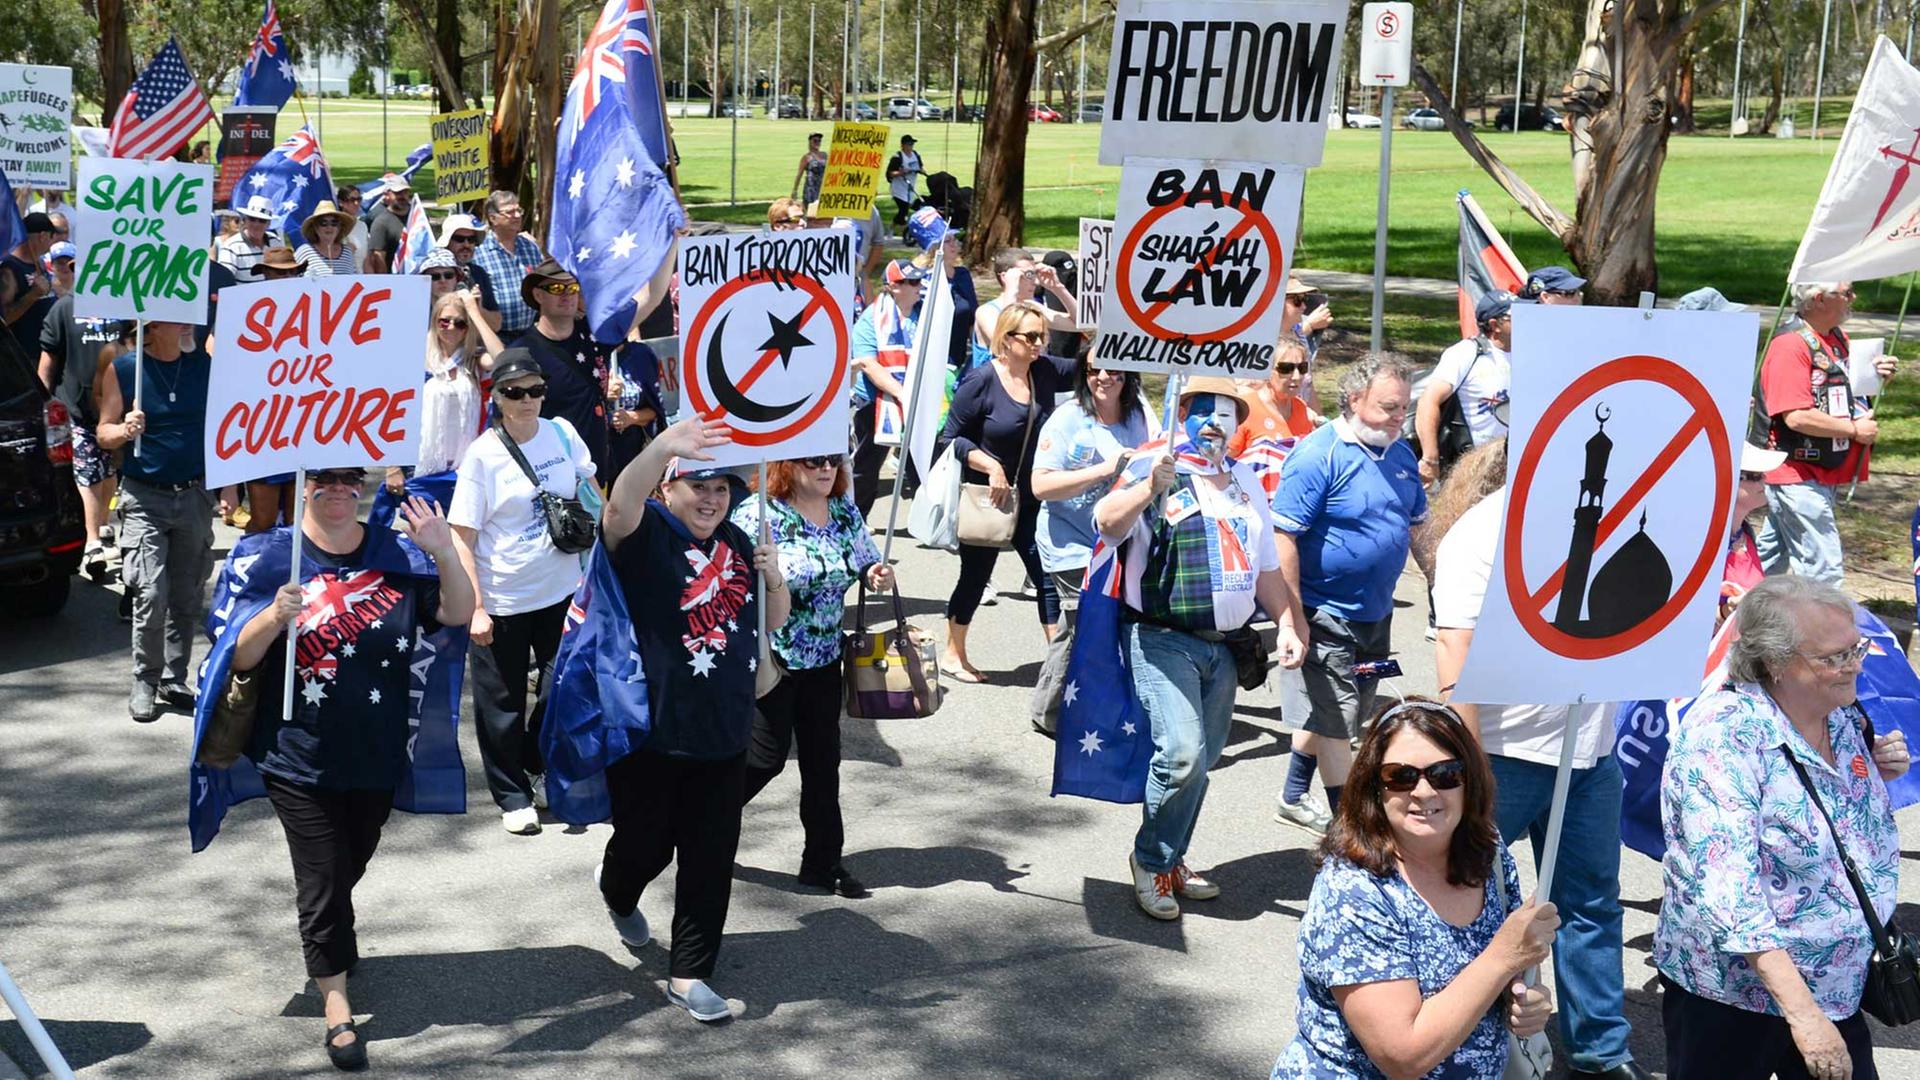 Rund 400 Teilnehmer bei einer Pro-Pegida-Demonstration im australischen Canberra. "Save our Culture" oder "Save our Farms" steht auf den Plakaten.